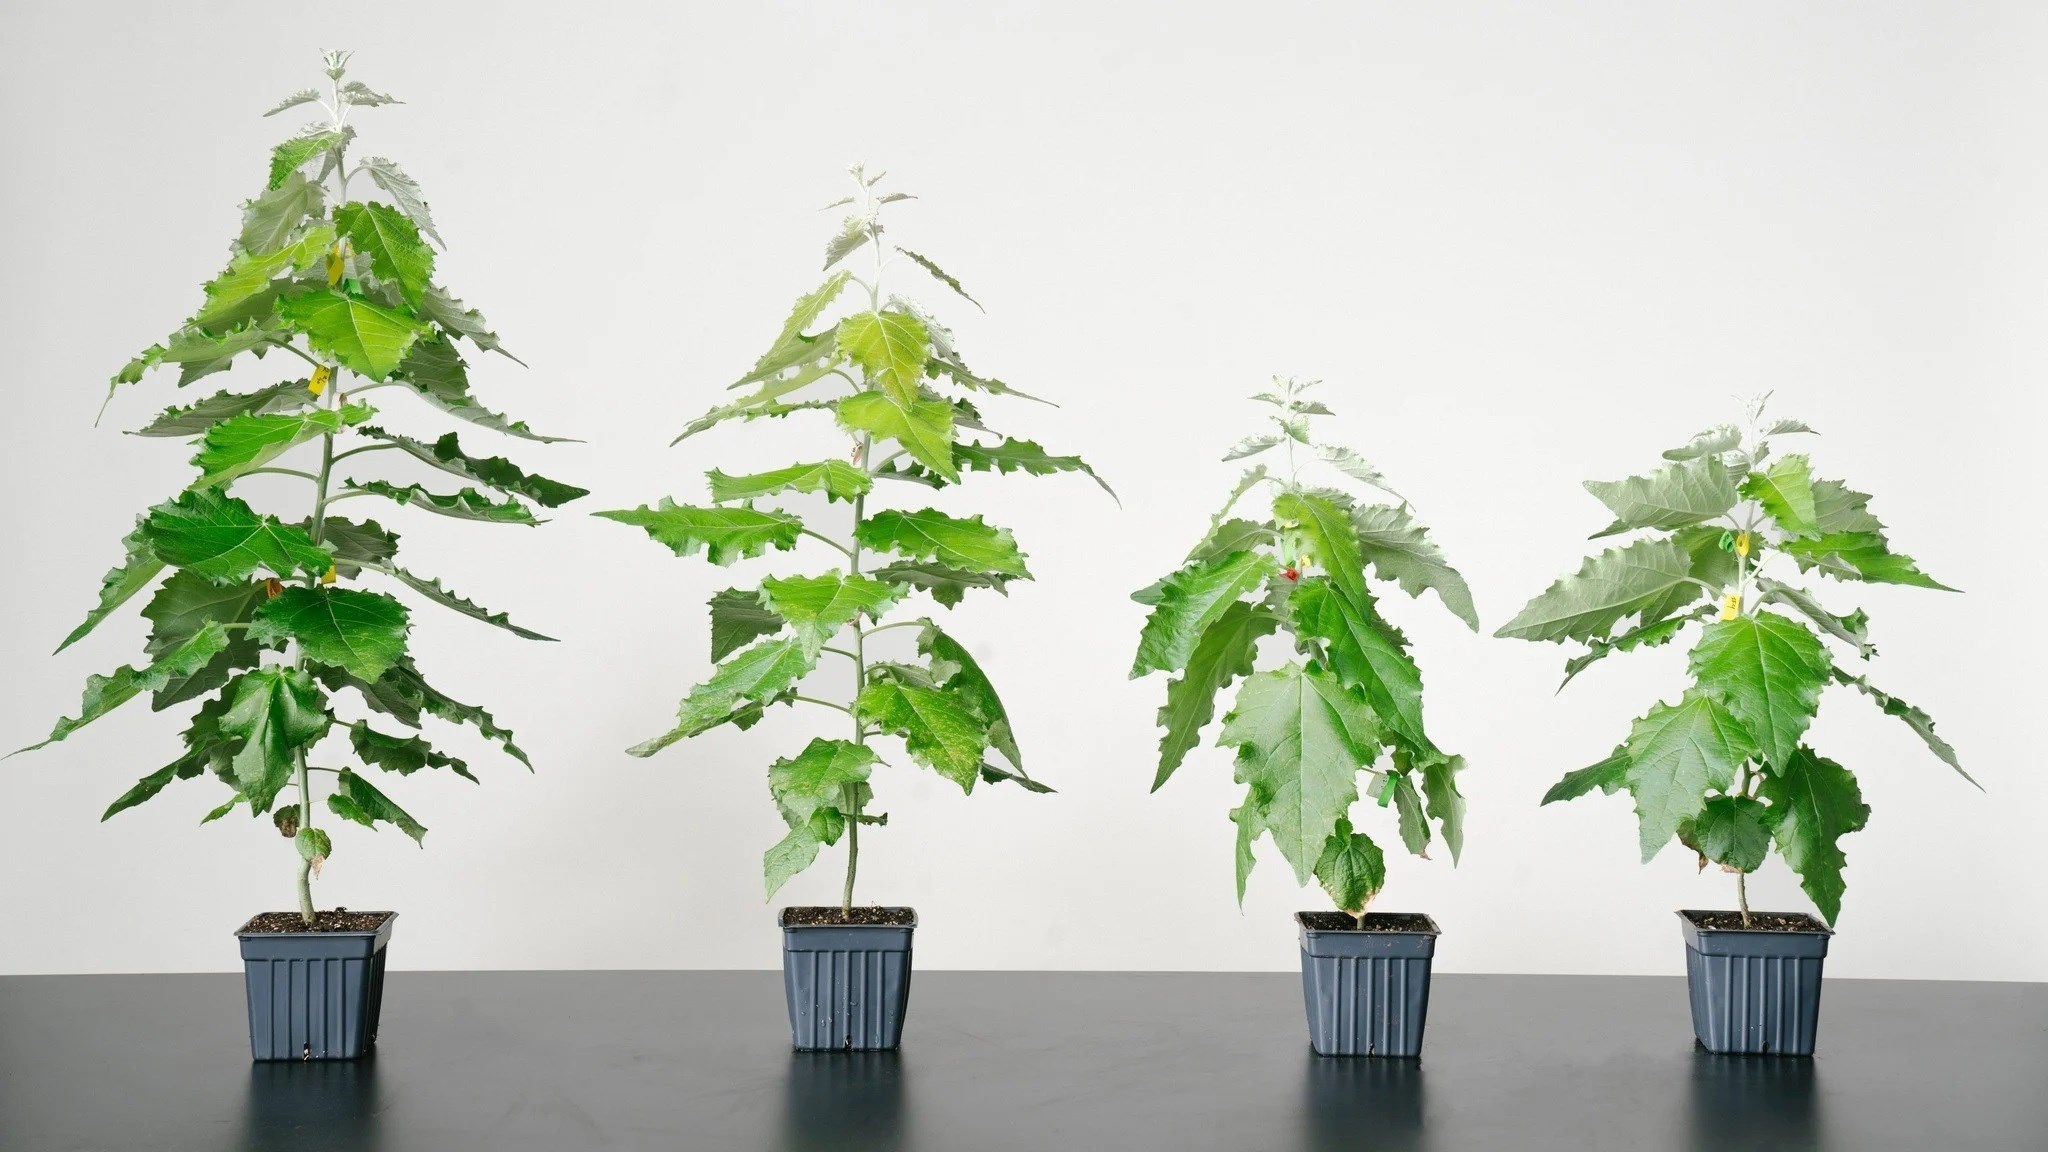 Daha hızlı büyüyen genetiği değiştirilmiş ağaçların ekimi başladı